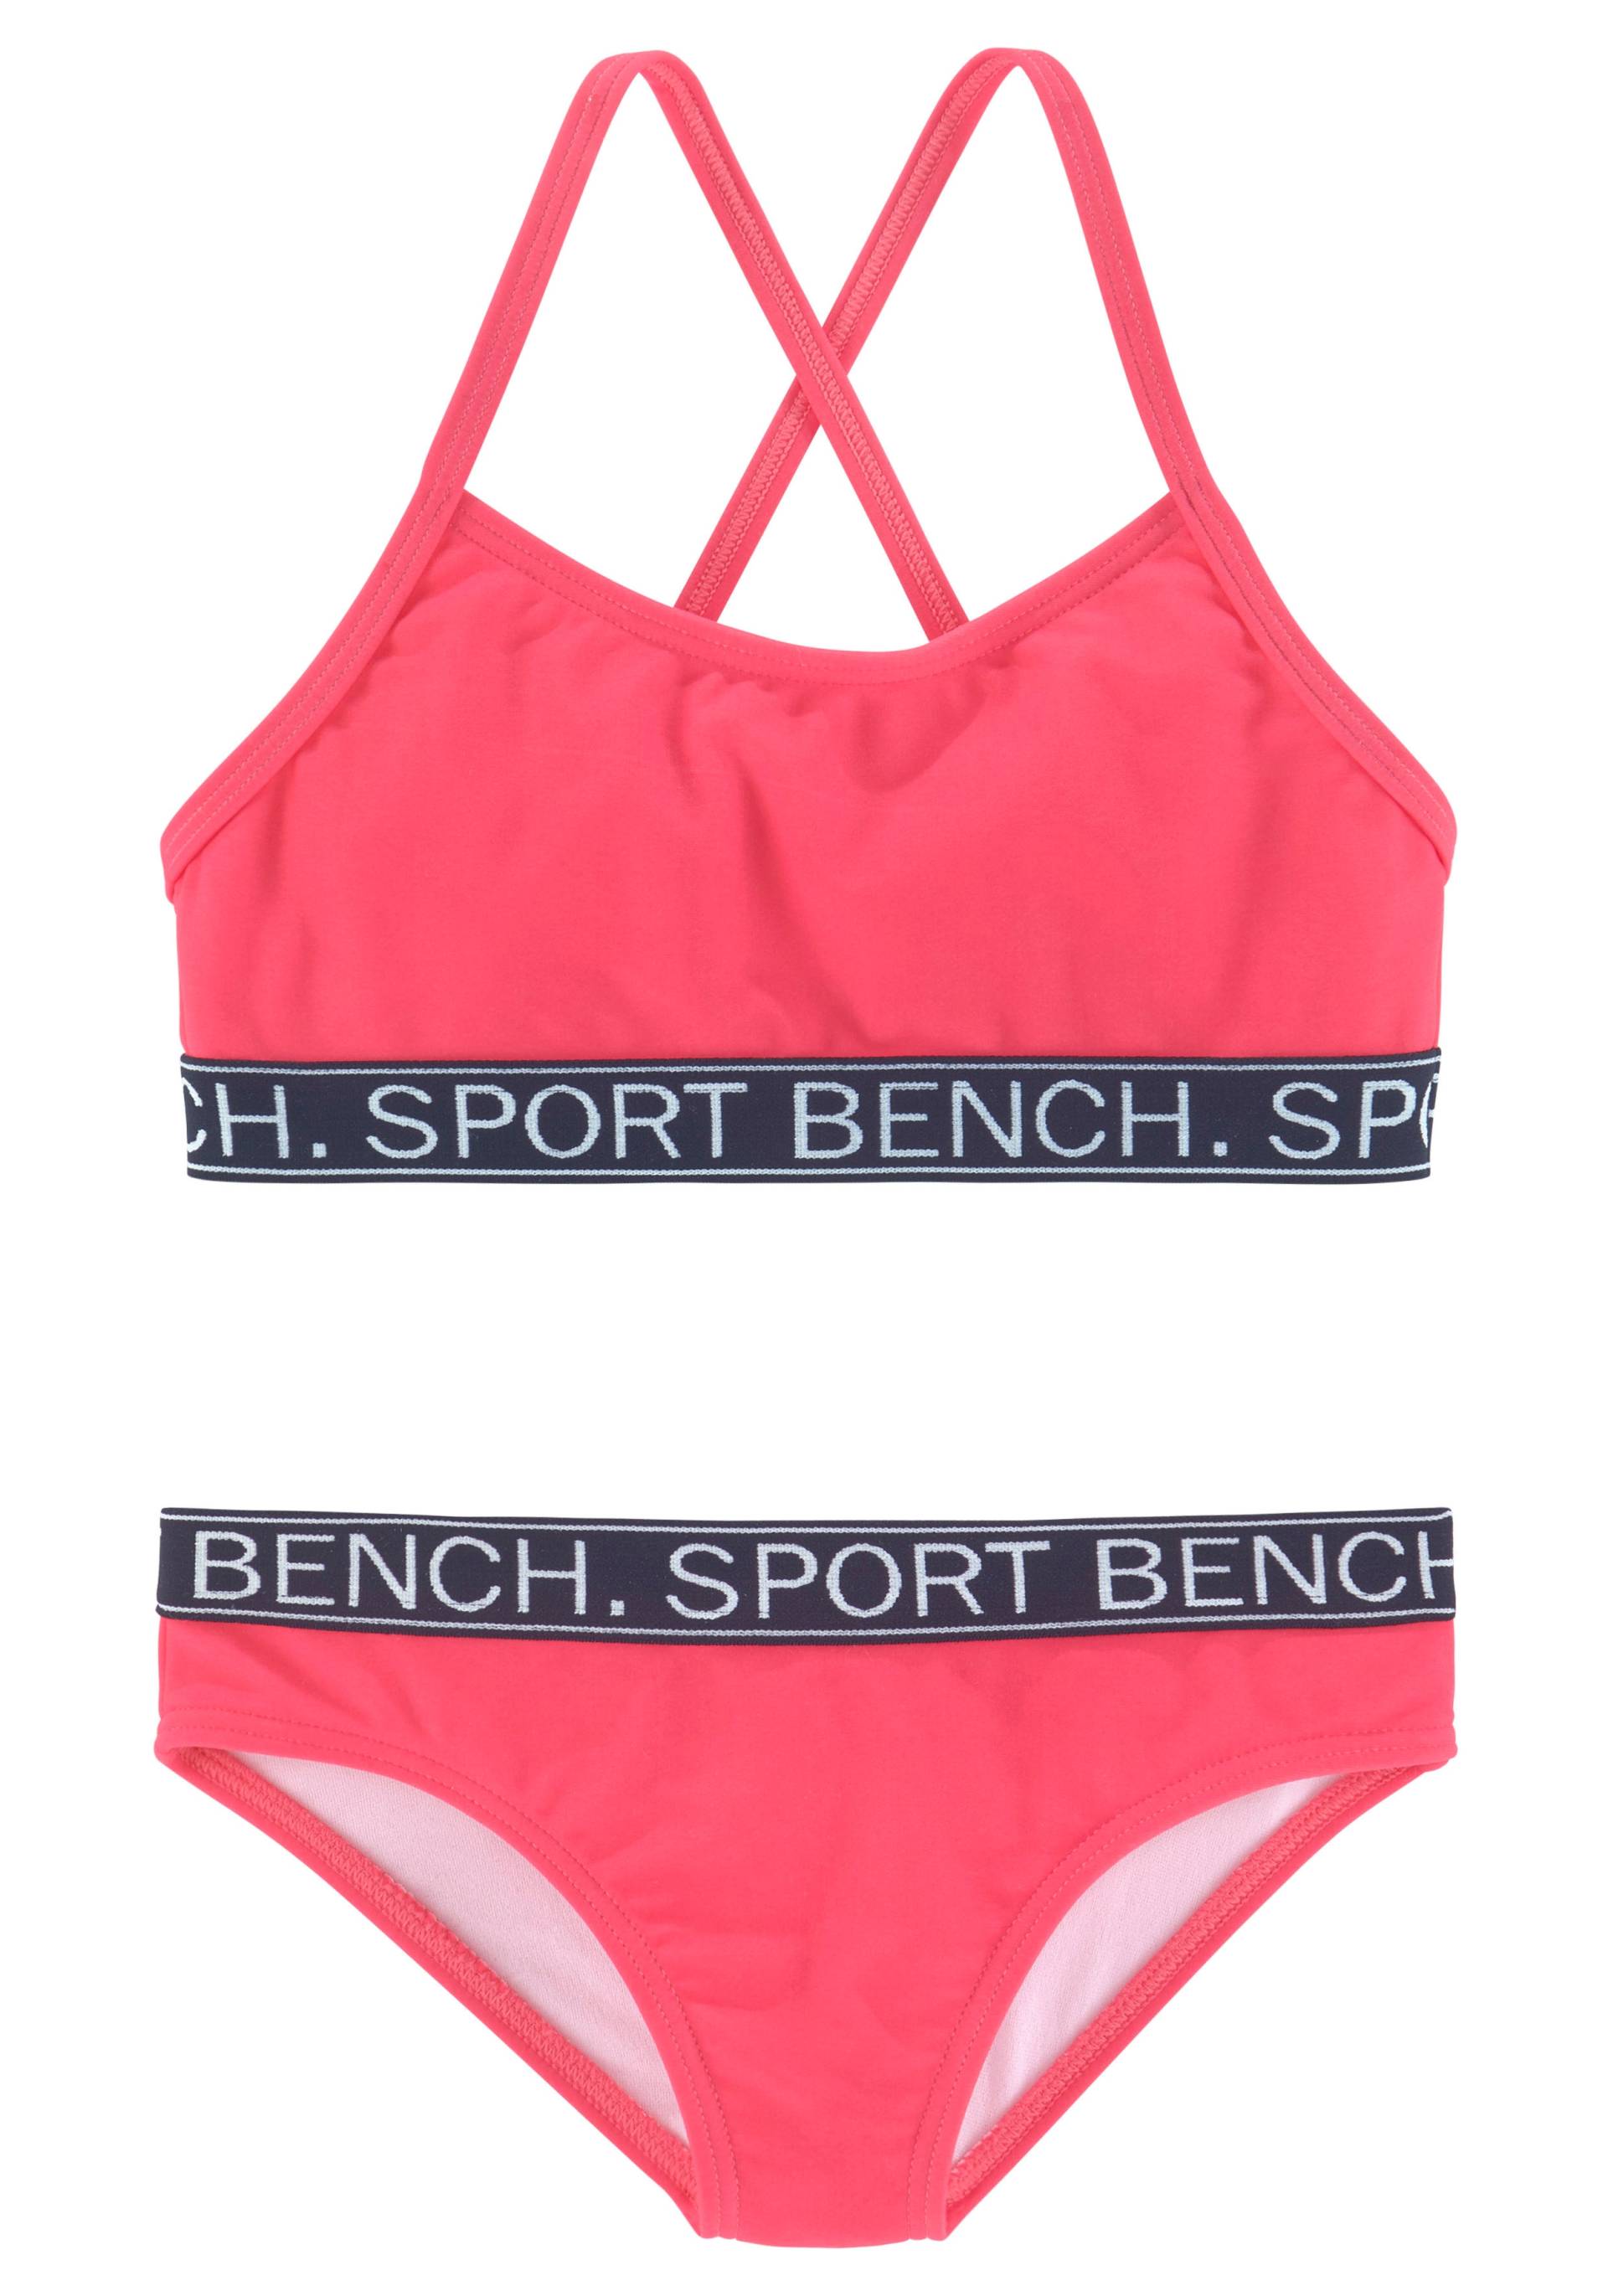 Bench. Bustier-Bikini »Yva Kids«, in sportlichem Design und Farben von Bench.